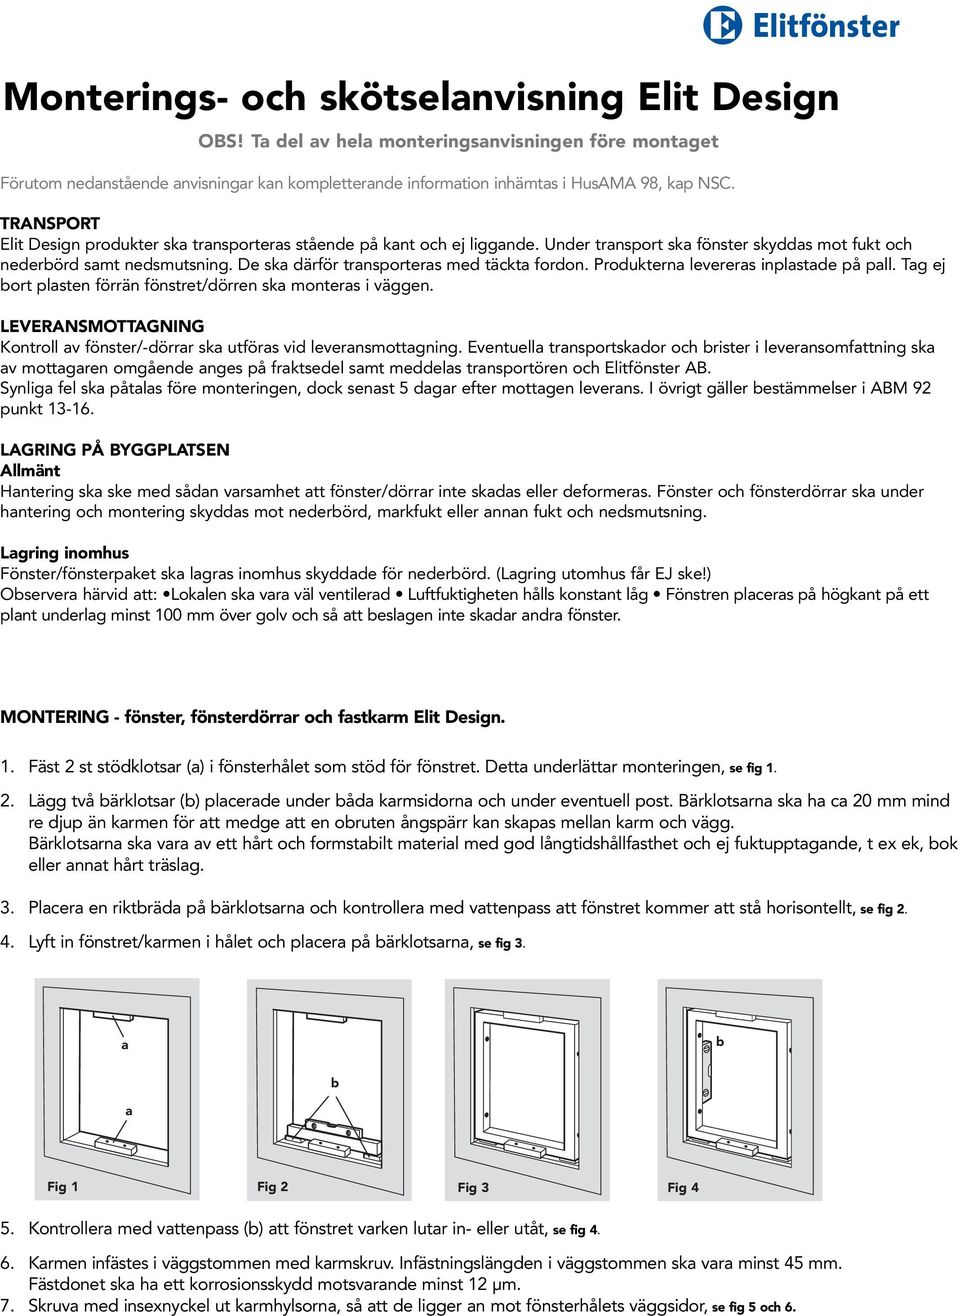 Monterings- och skötselanvisning Elit Design - PDF Free Download